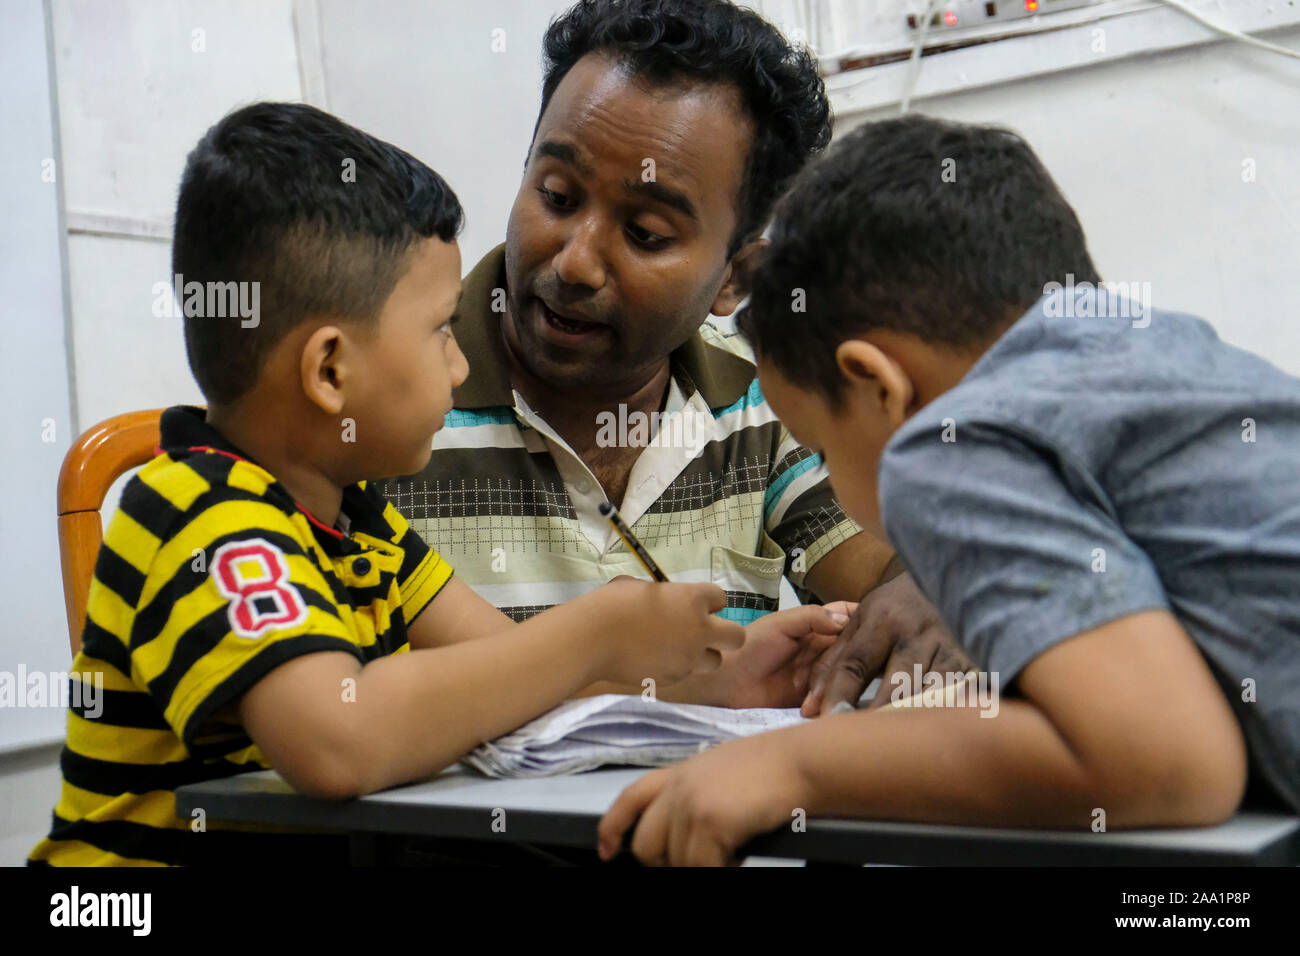 Ein freiwilliger Lehrer mit Kindern in der Klasse an der Akademie. Rohingya English Academy ist ein Learning Center, die freie Bildung auf die Rohingya-flüchtlinge sowohl für Kinder als auch für Erwachsene bietet, wurde es von Saif Ullah ein rohingya Bürger leben in Malaysia und auch ein englischer Tutor an der Akademie Wer erhält keine Unterstützung von der Regierung gegründet. Malaysia hat mehr als 177,690 registrierte Flüchtlinge und Asylsuchenden Rohingya Nach UNHCR-Statistik und 45,470 davon sind Kinder unter 18 Jahren. Stockfoto